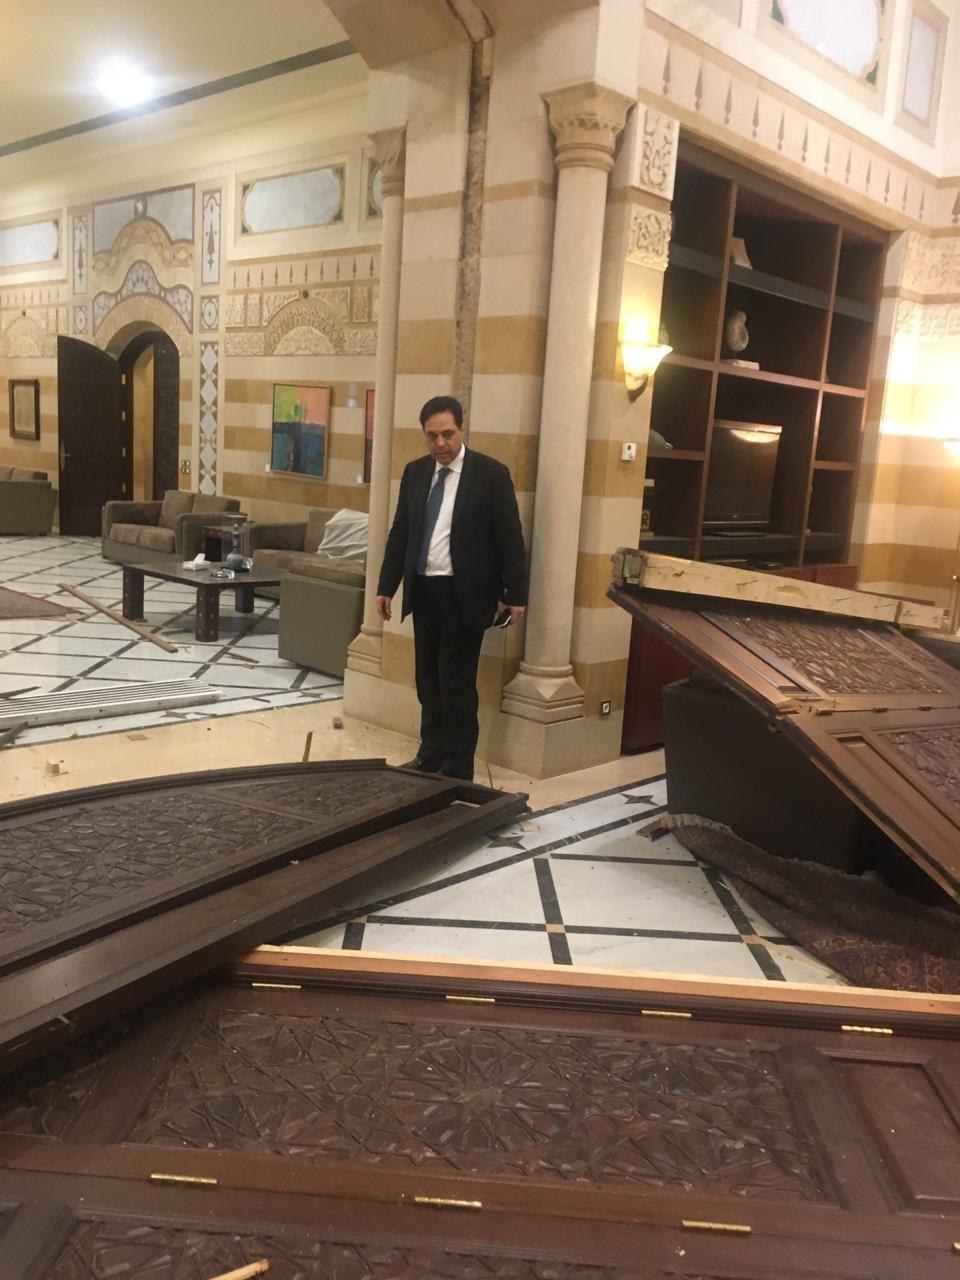 نقطه صفر انفجار و محل كار نخست وزير لبنان پس از انفجار بزرگ (عكس)